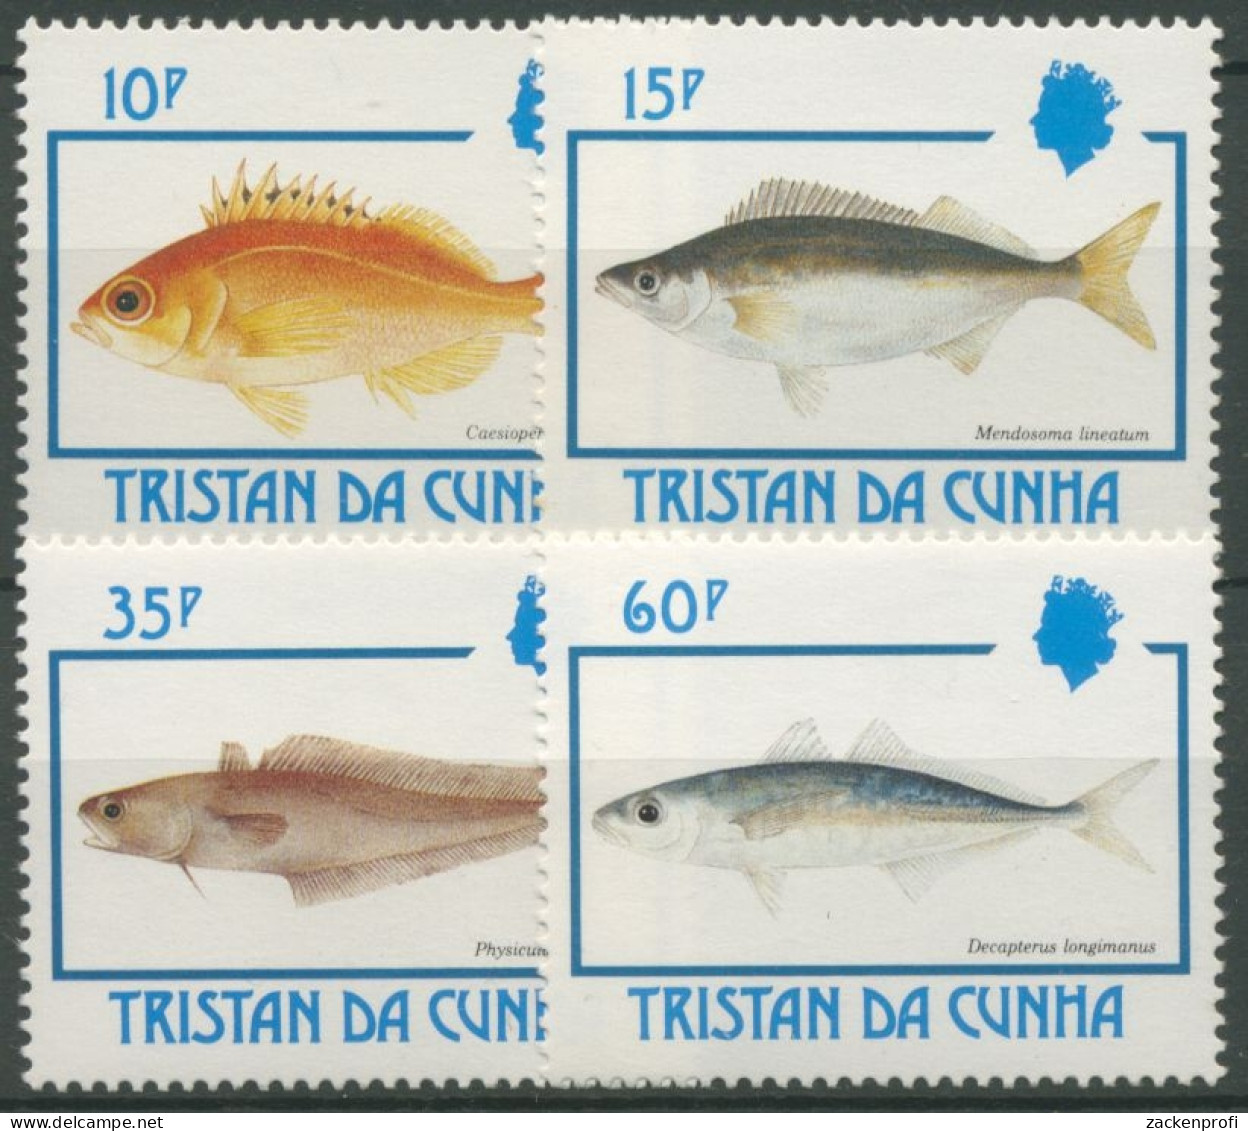 Tristan Da Cunha 1992 Fische Makrele 526/29 Postfrisch - Tristan Da Cunha